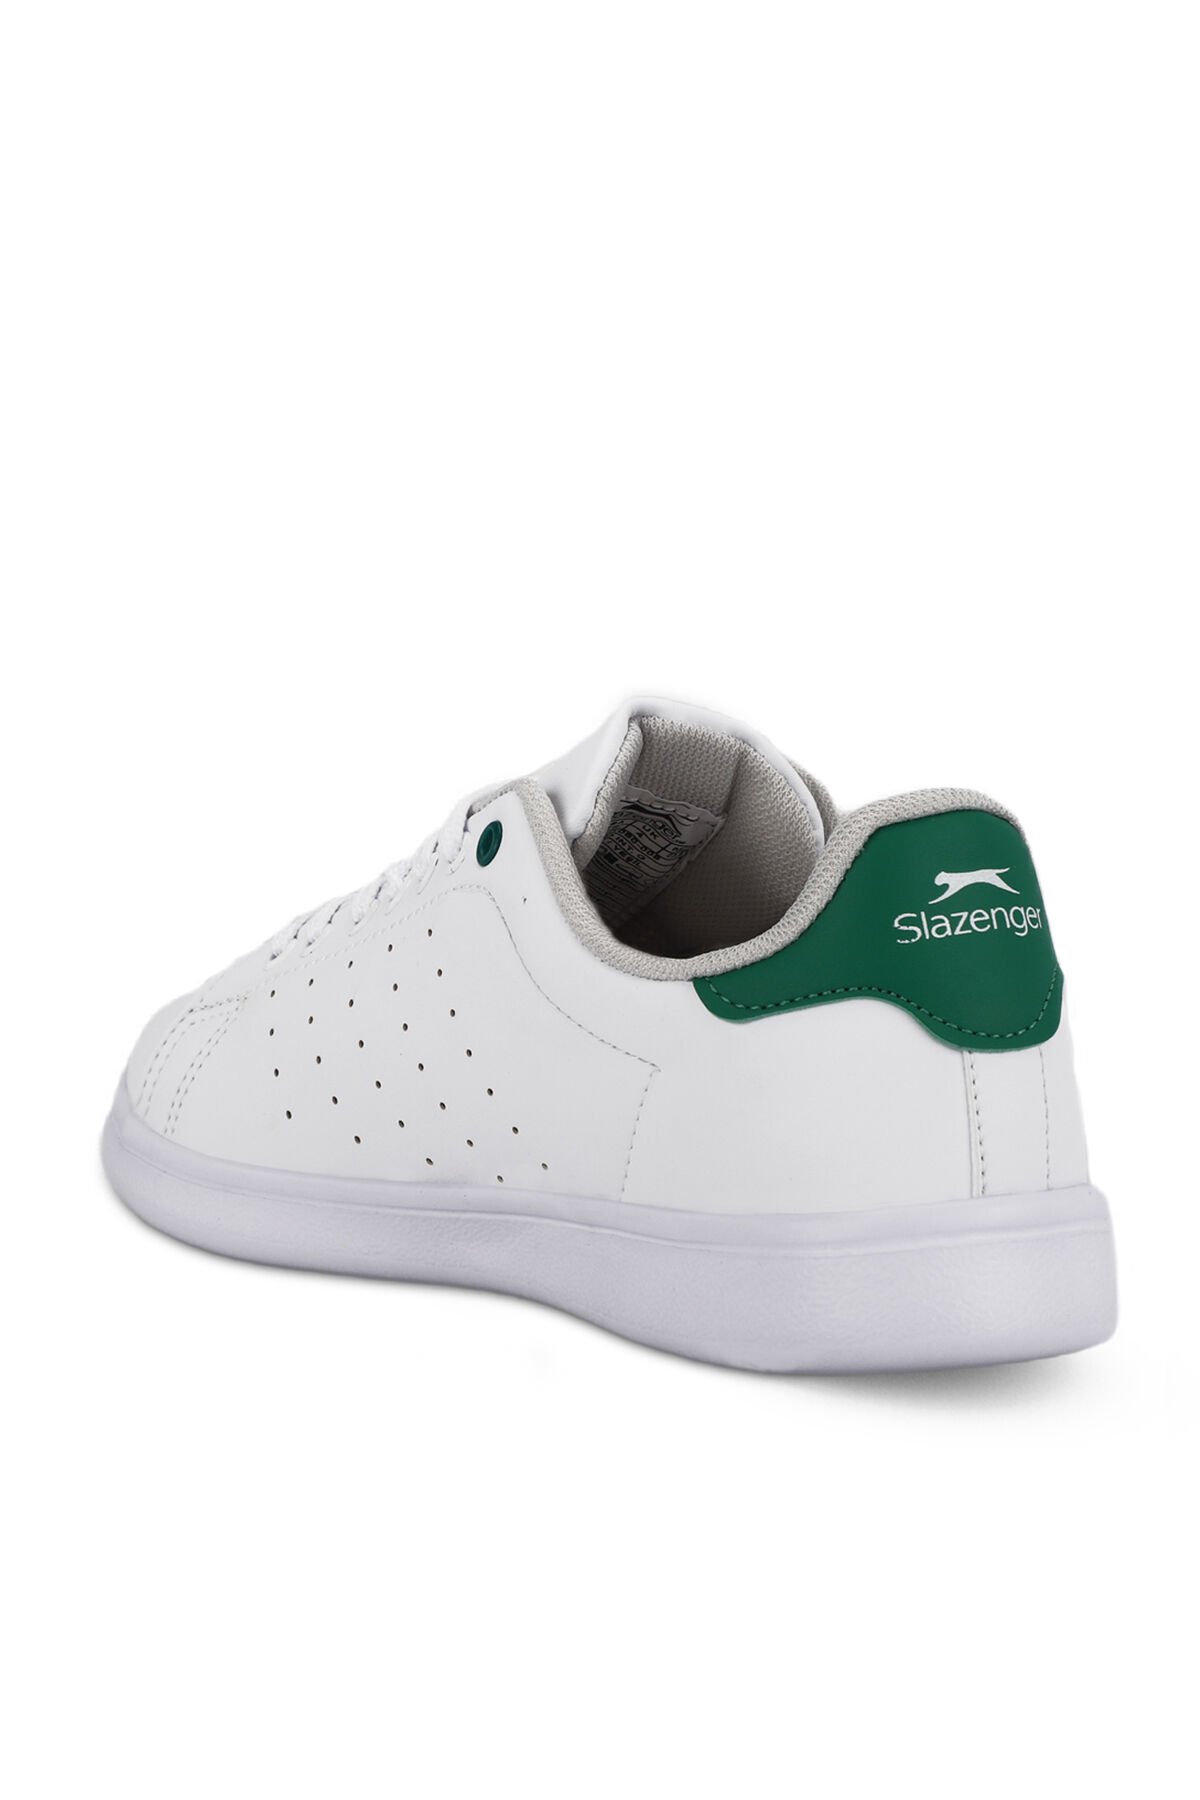 PIANO I Sneaker Kadın Ayakkabı Beyaz / Yeşil - Thumbnail